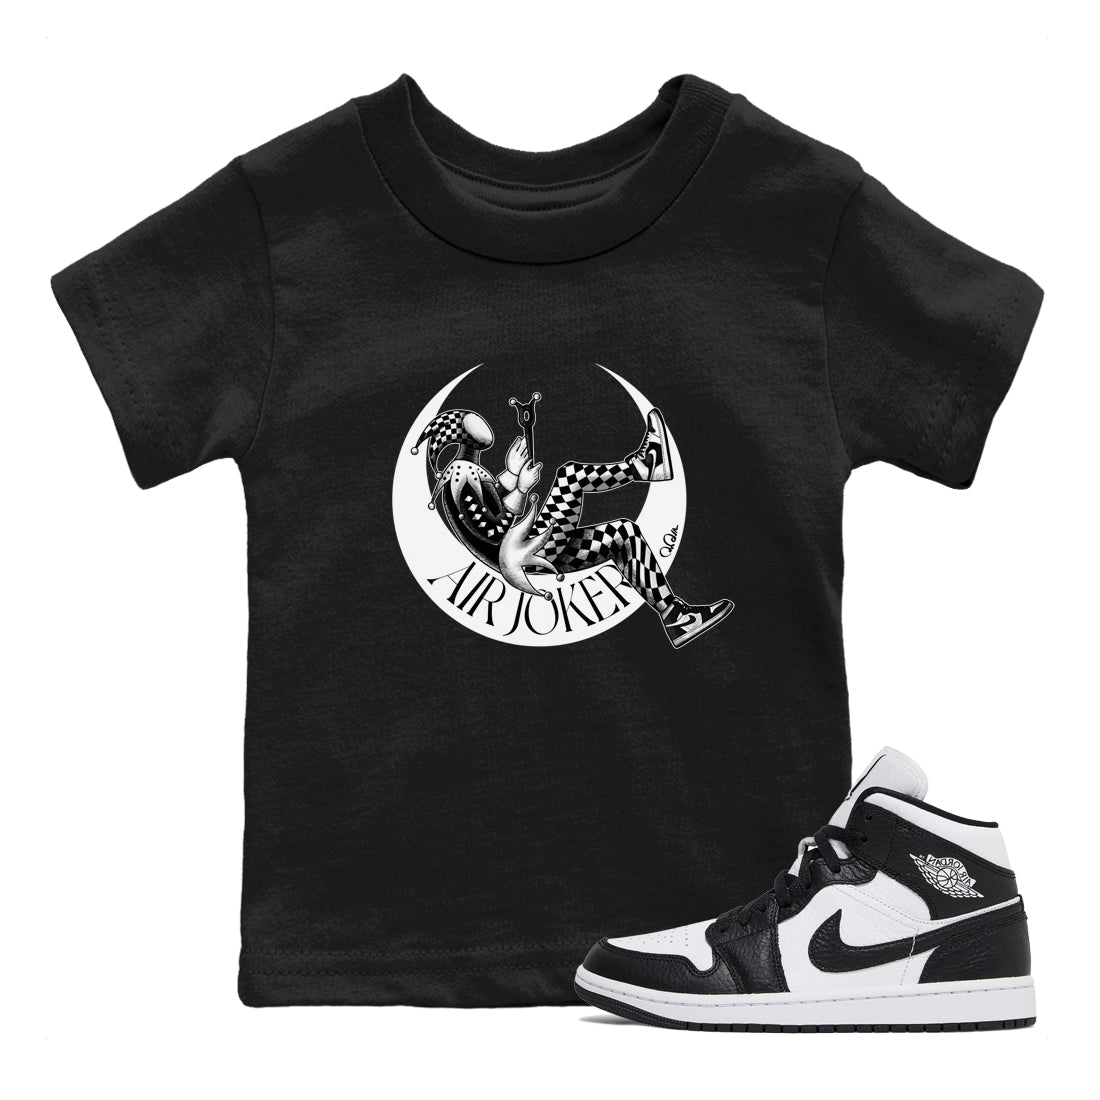 Air Jordan 1 Homage Sneaker Tees Drip Gear Zone Air Joker Sneaker Tees AJ1 Homage Shirt Kids Shirts Black 1